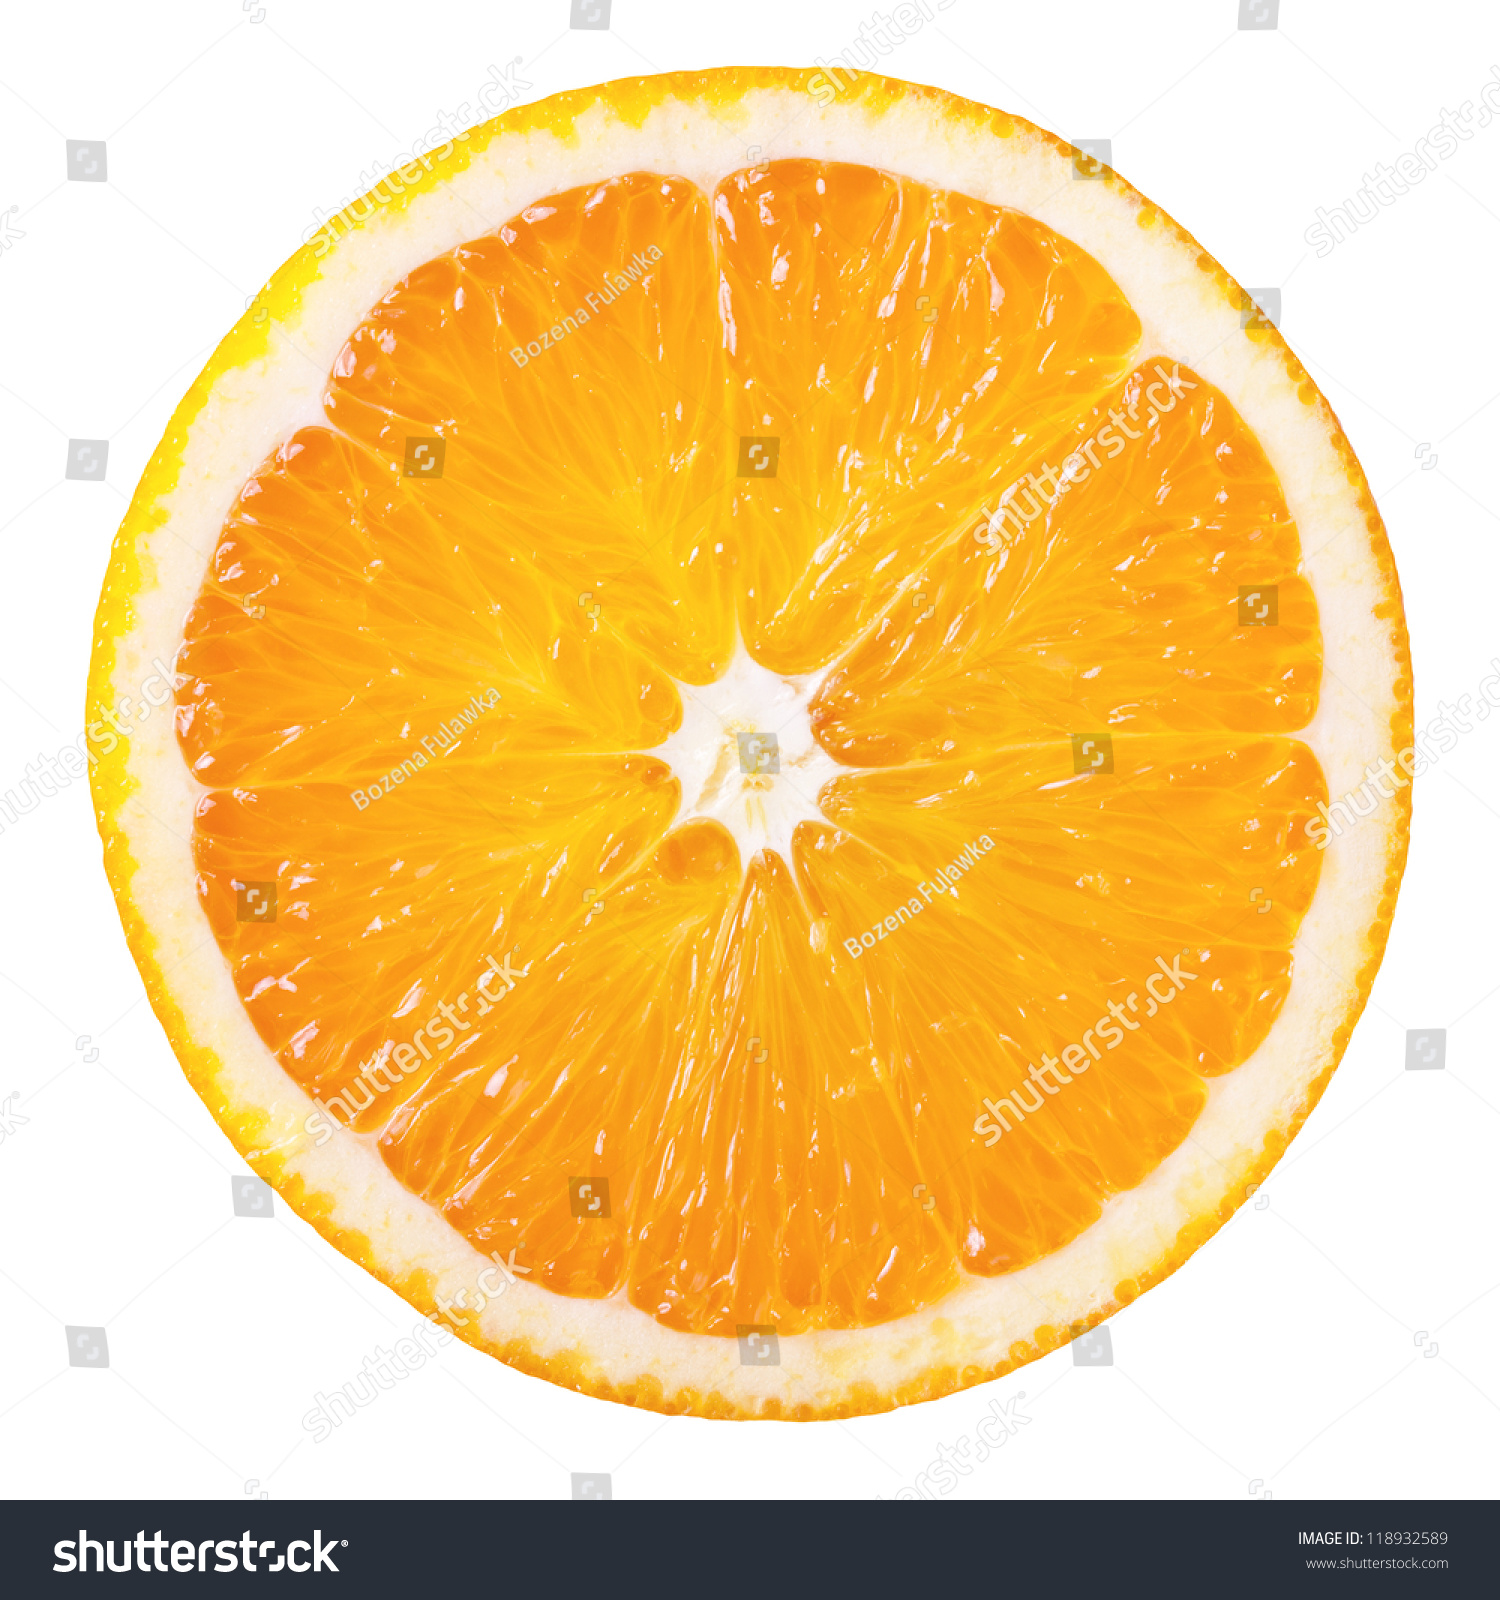 Scheibe frischer Orange isoliert auf weißem Hintergrund #118932589